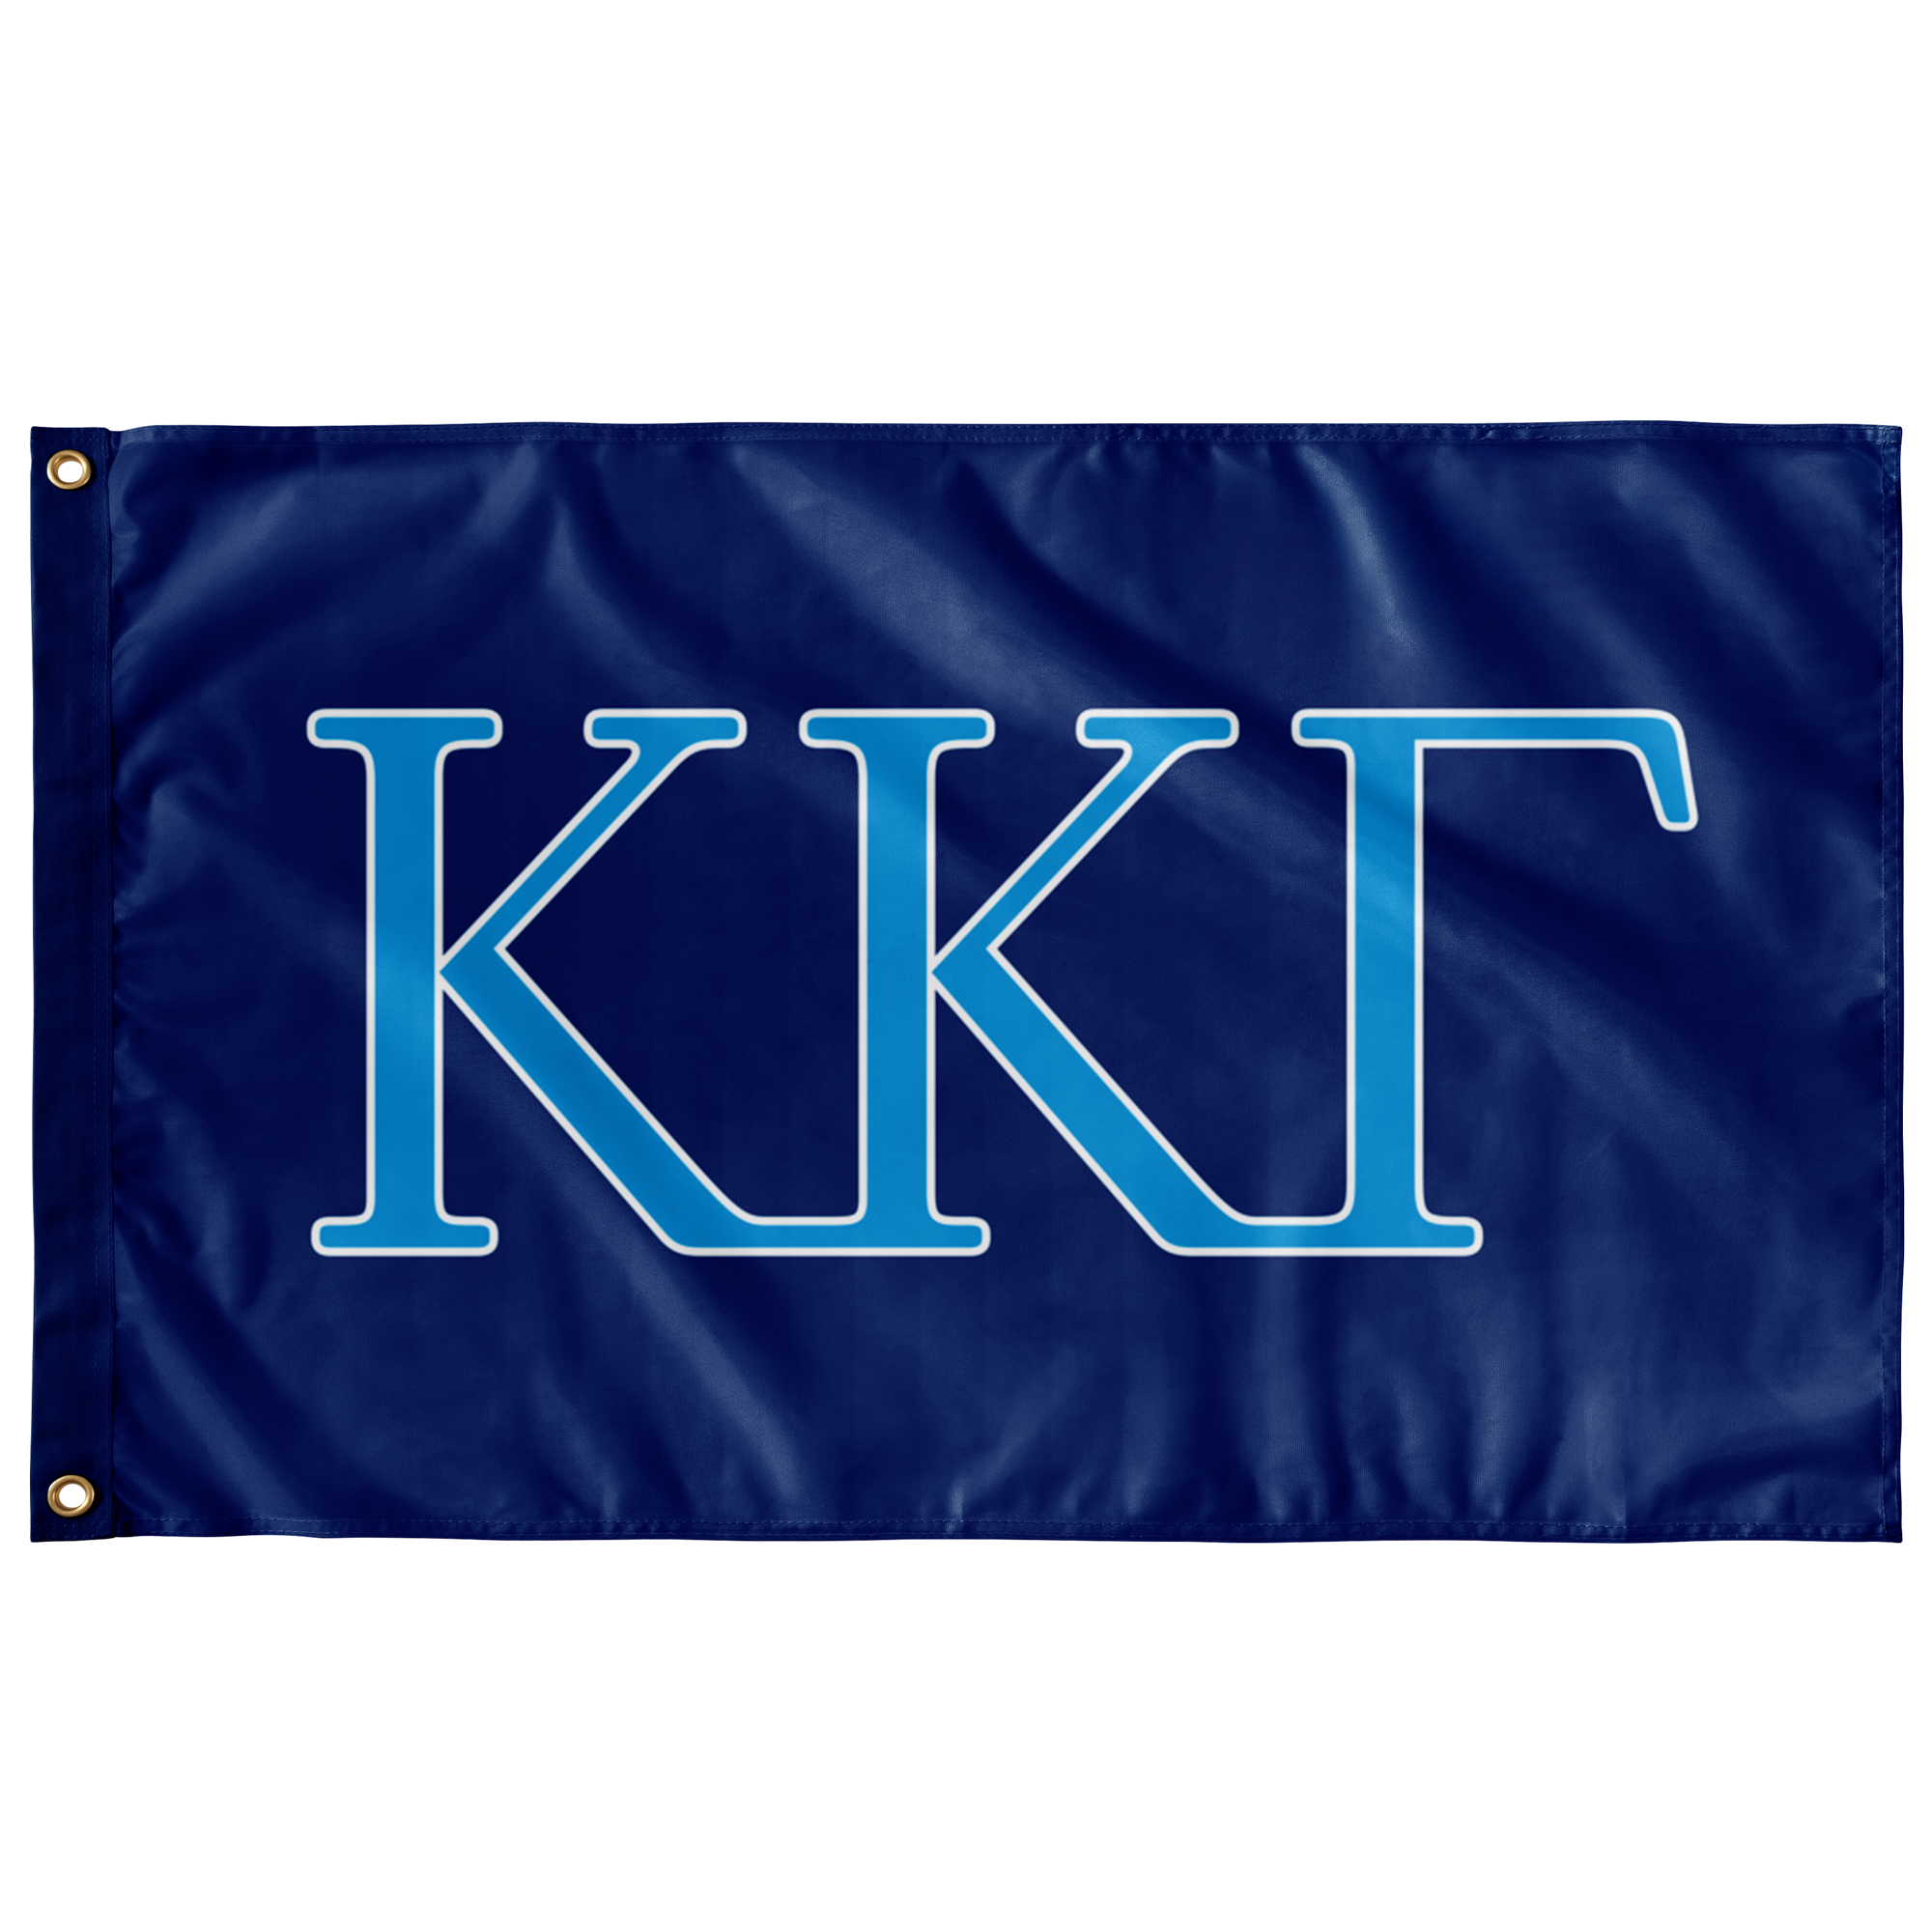 Kappa Gamma Sorority Letter Flag - Blue, Blue & Whit – DesignerGreek2